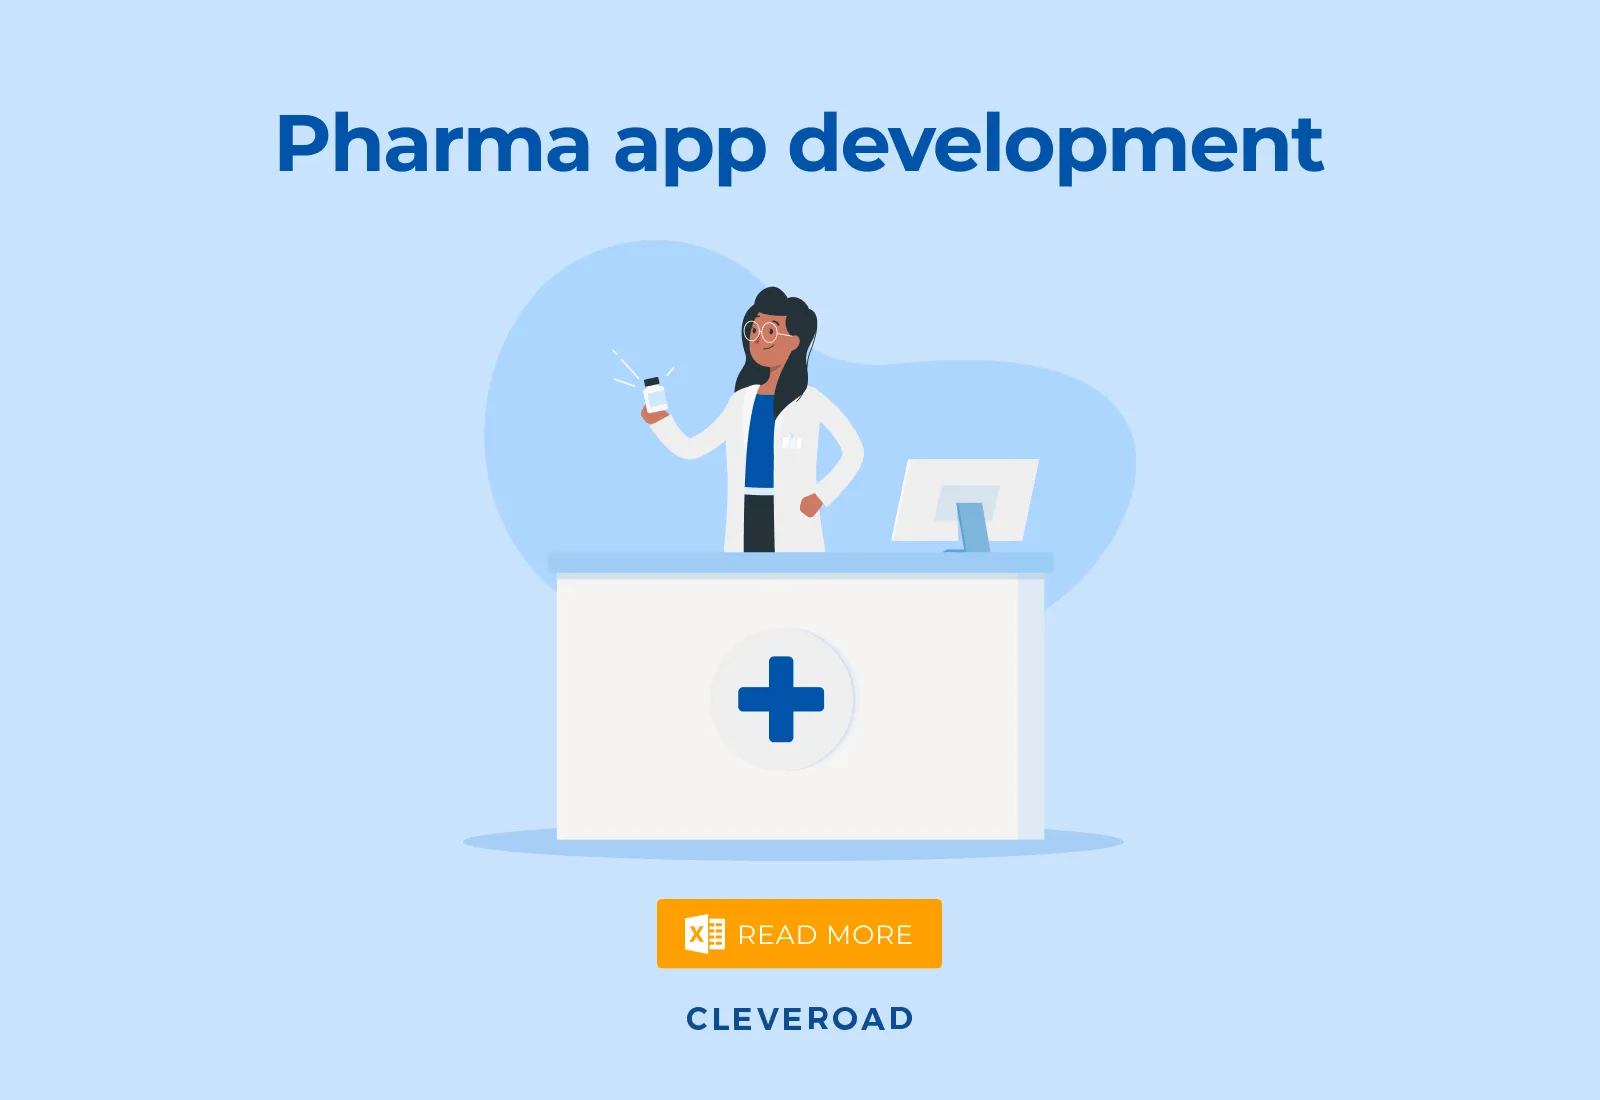 Pharmaceutical app development